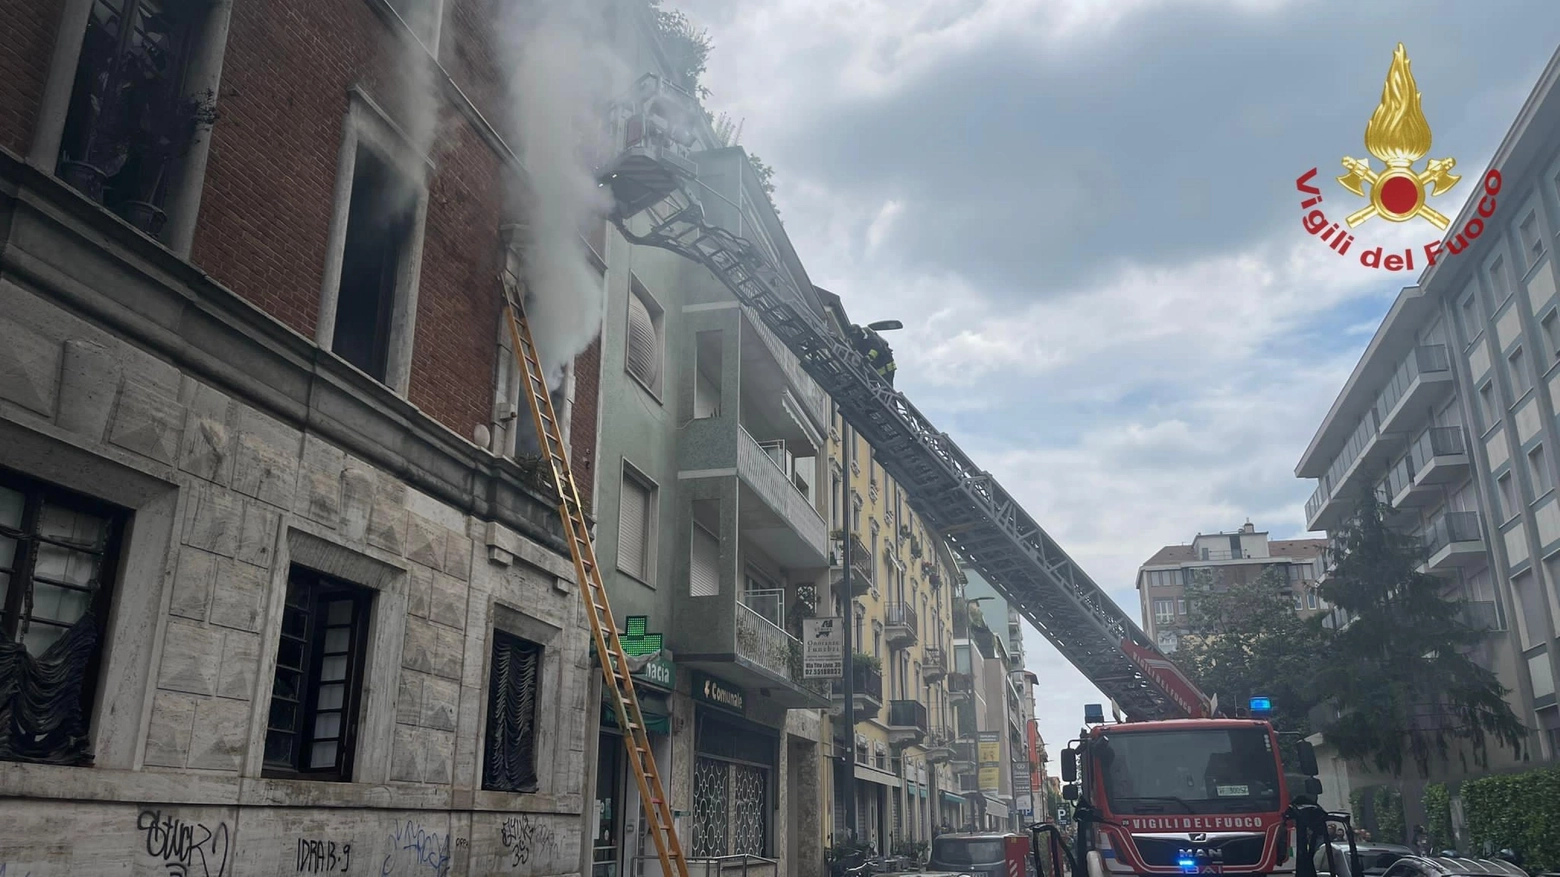 L'esplosione del furgone e i danni al palazzo in via Vasari